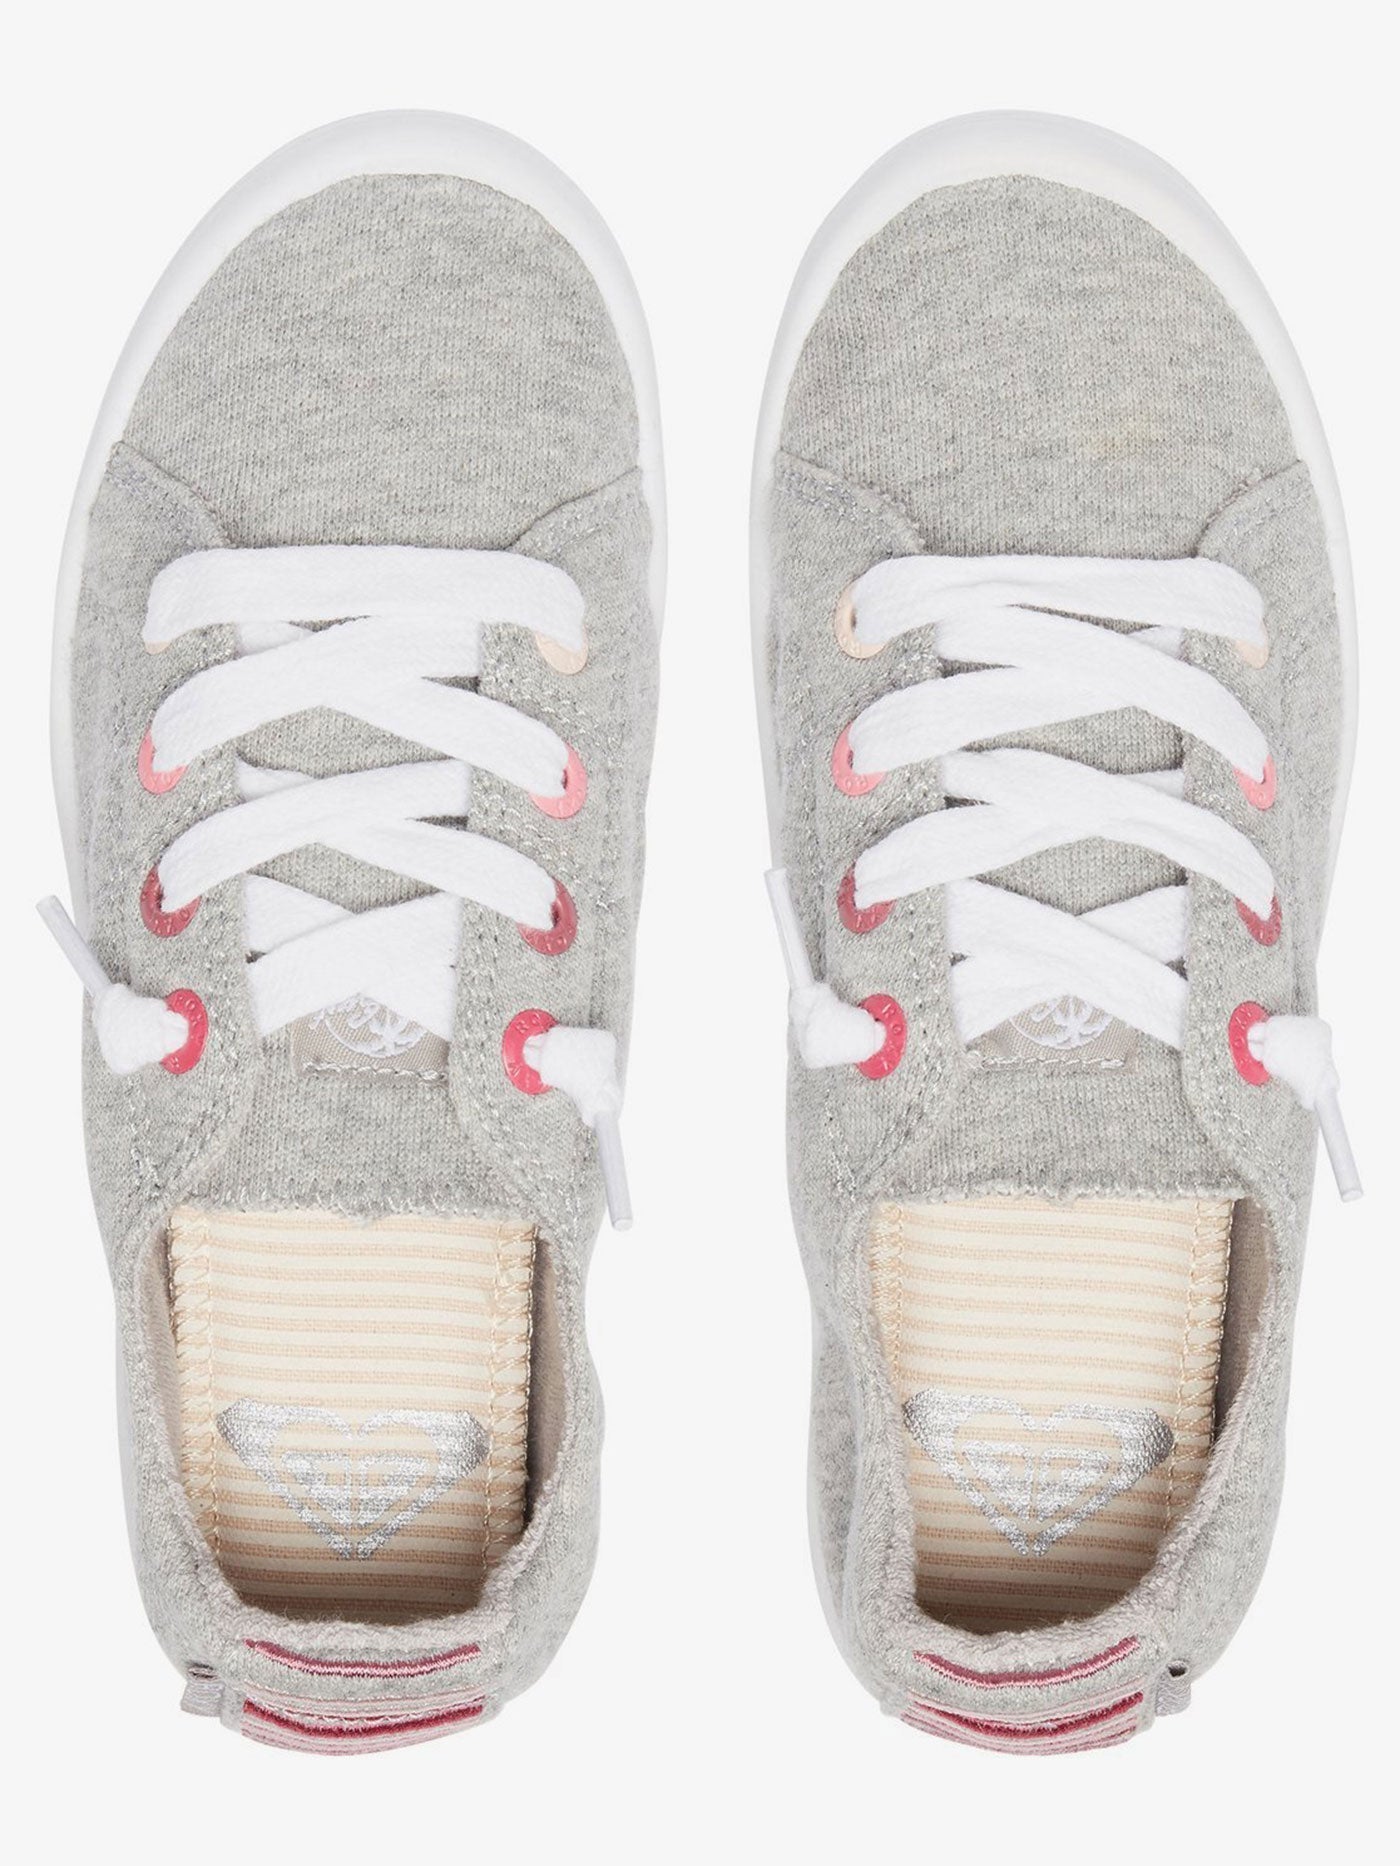 Bayshore Slip-On Grey Heather Shoes